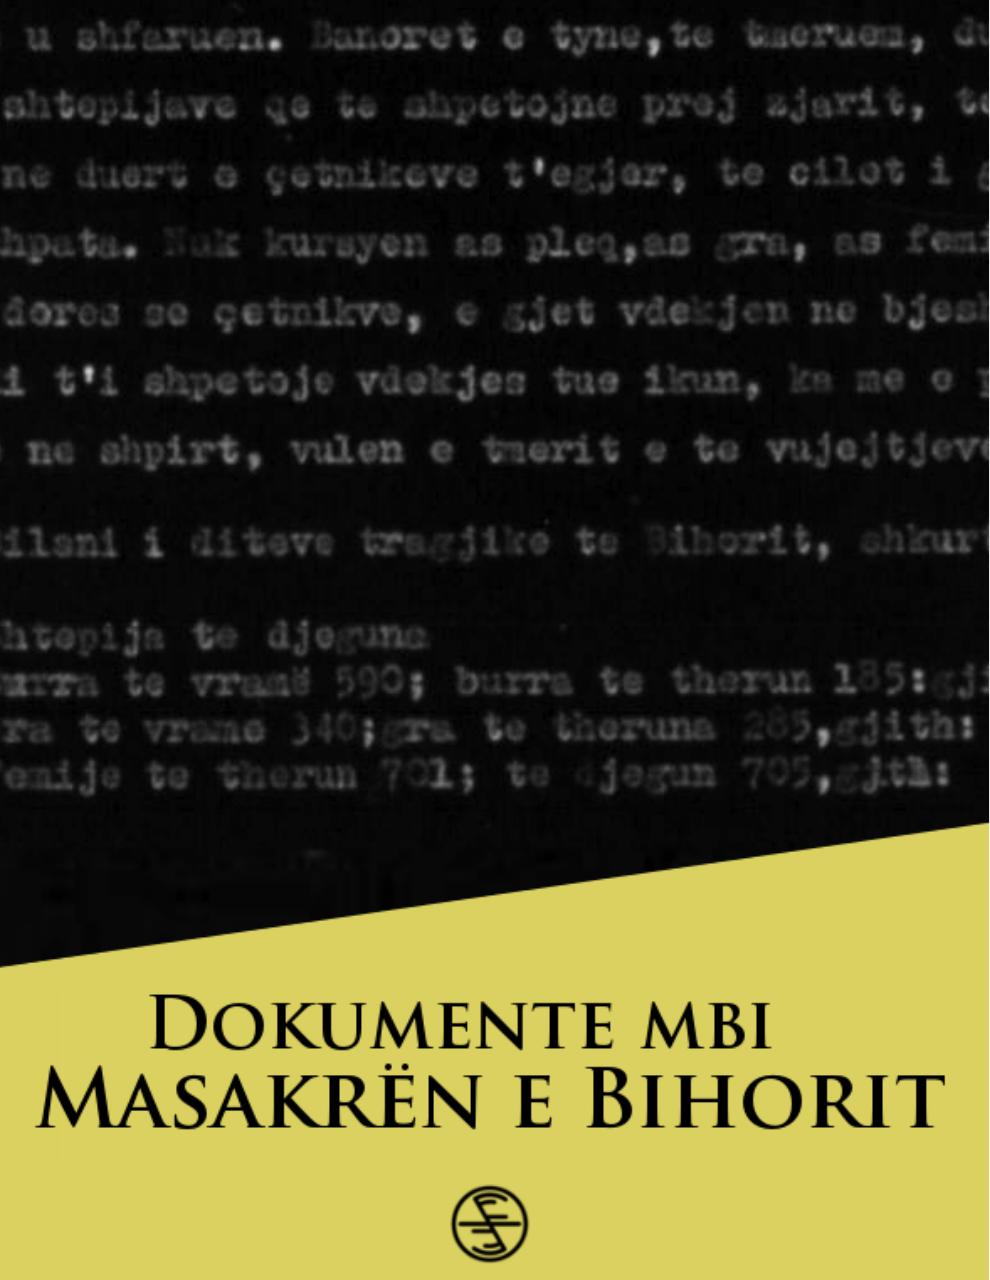 Dokumente mbi MasakrÃ«n e Bihorit.pdf - page 1/26